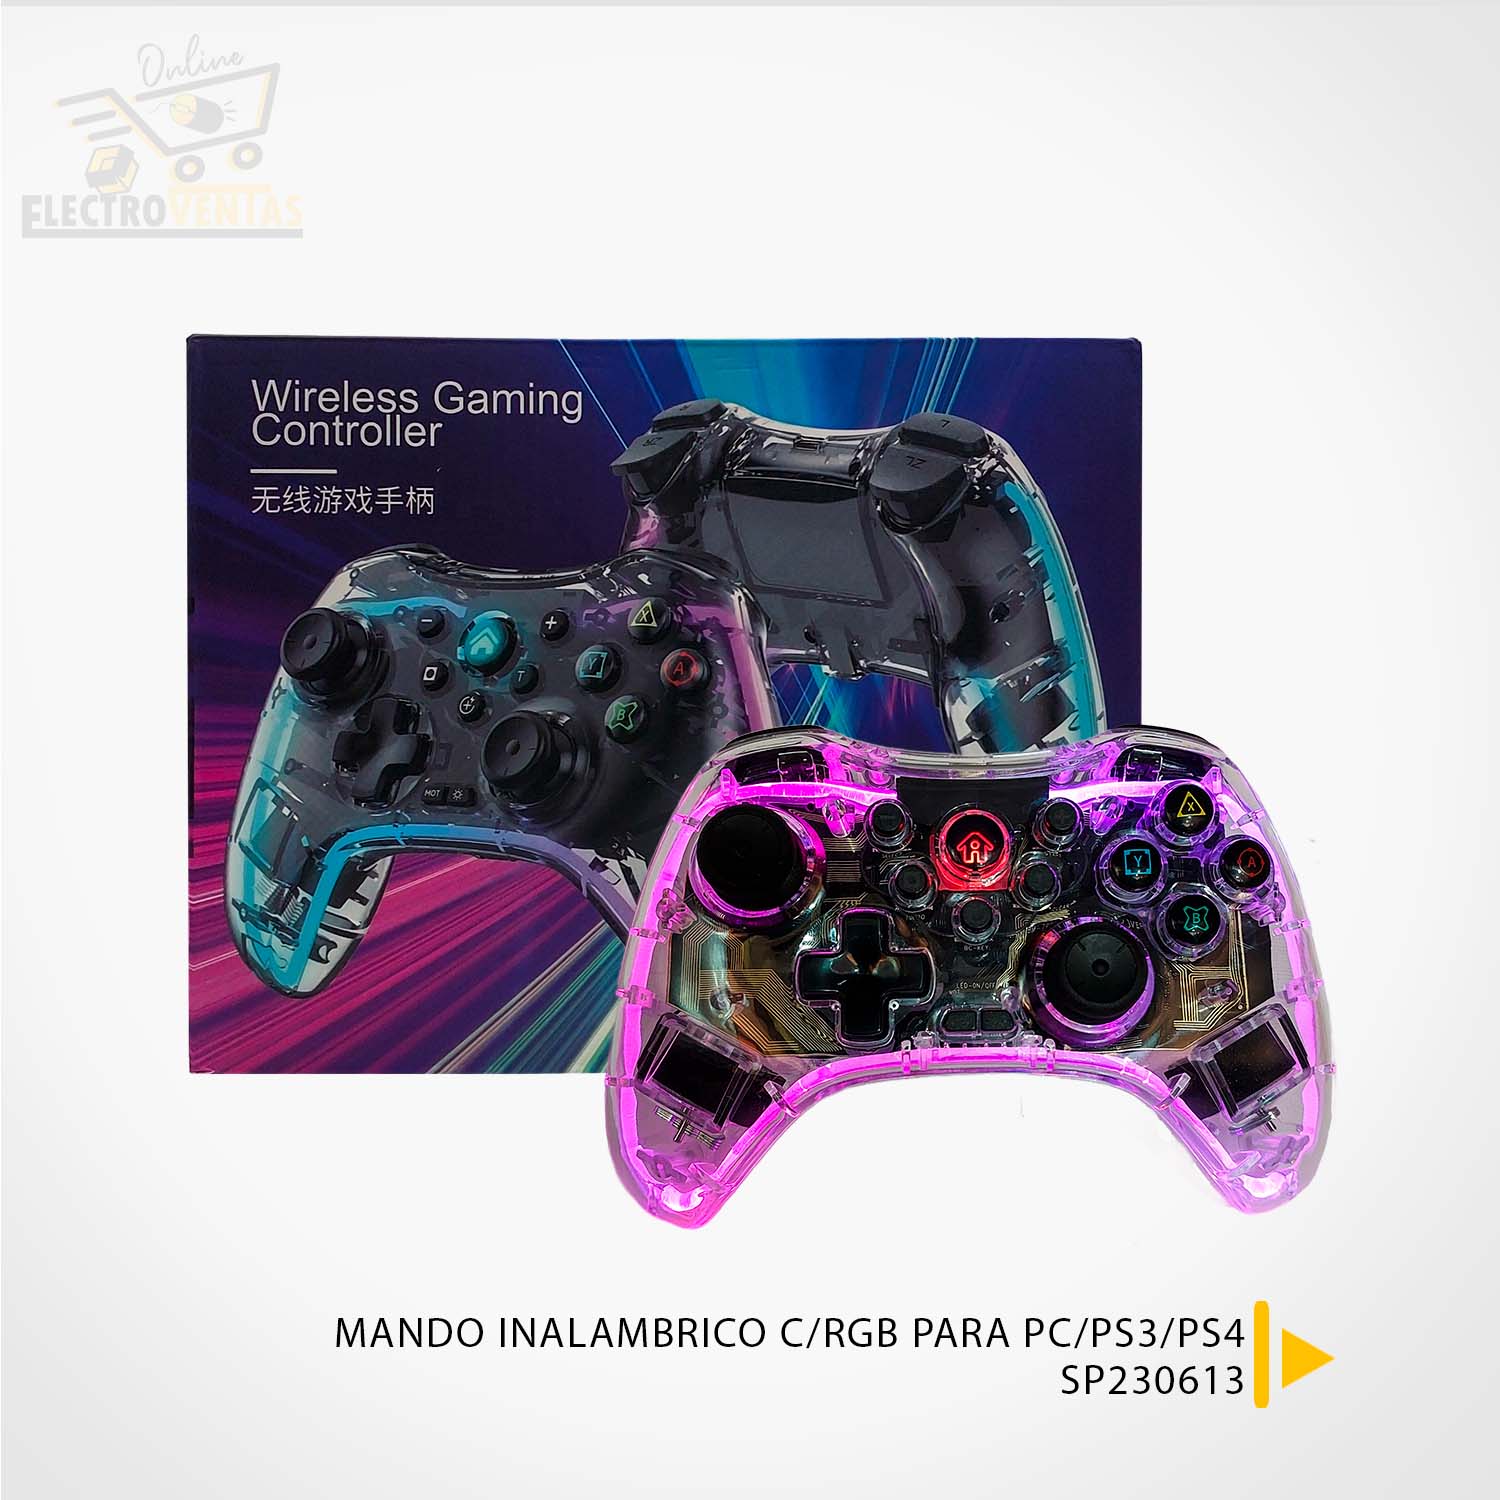 SP230613” MANDO INALAMBRICO C/RGB PARA PC/PS3/PS4 – VENTAS POR MAYOR BOLIVIA